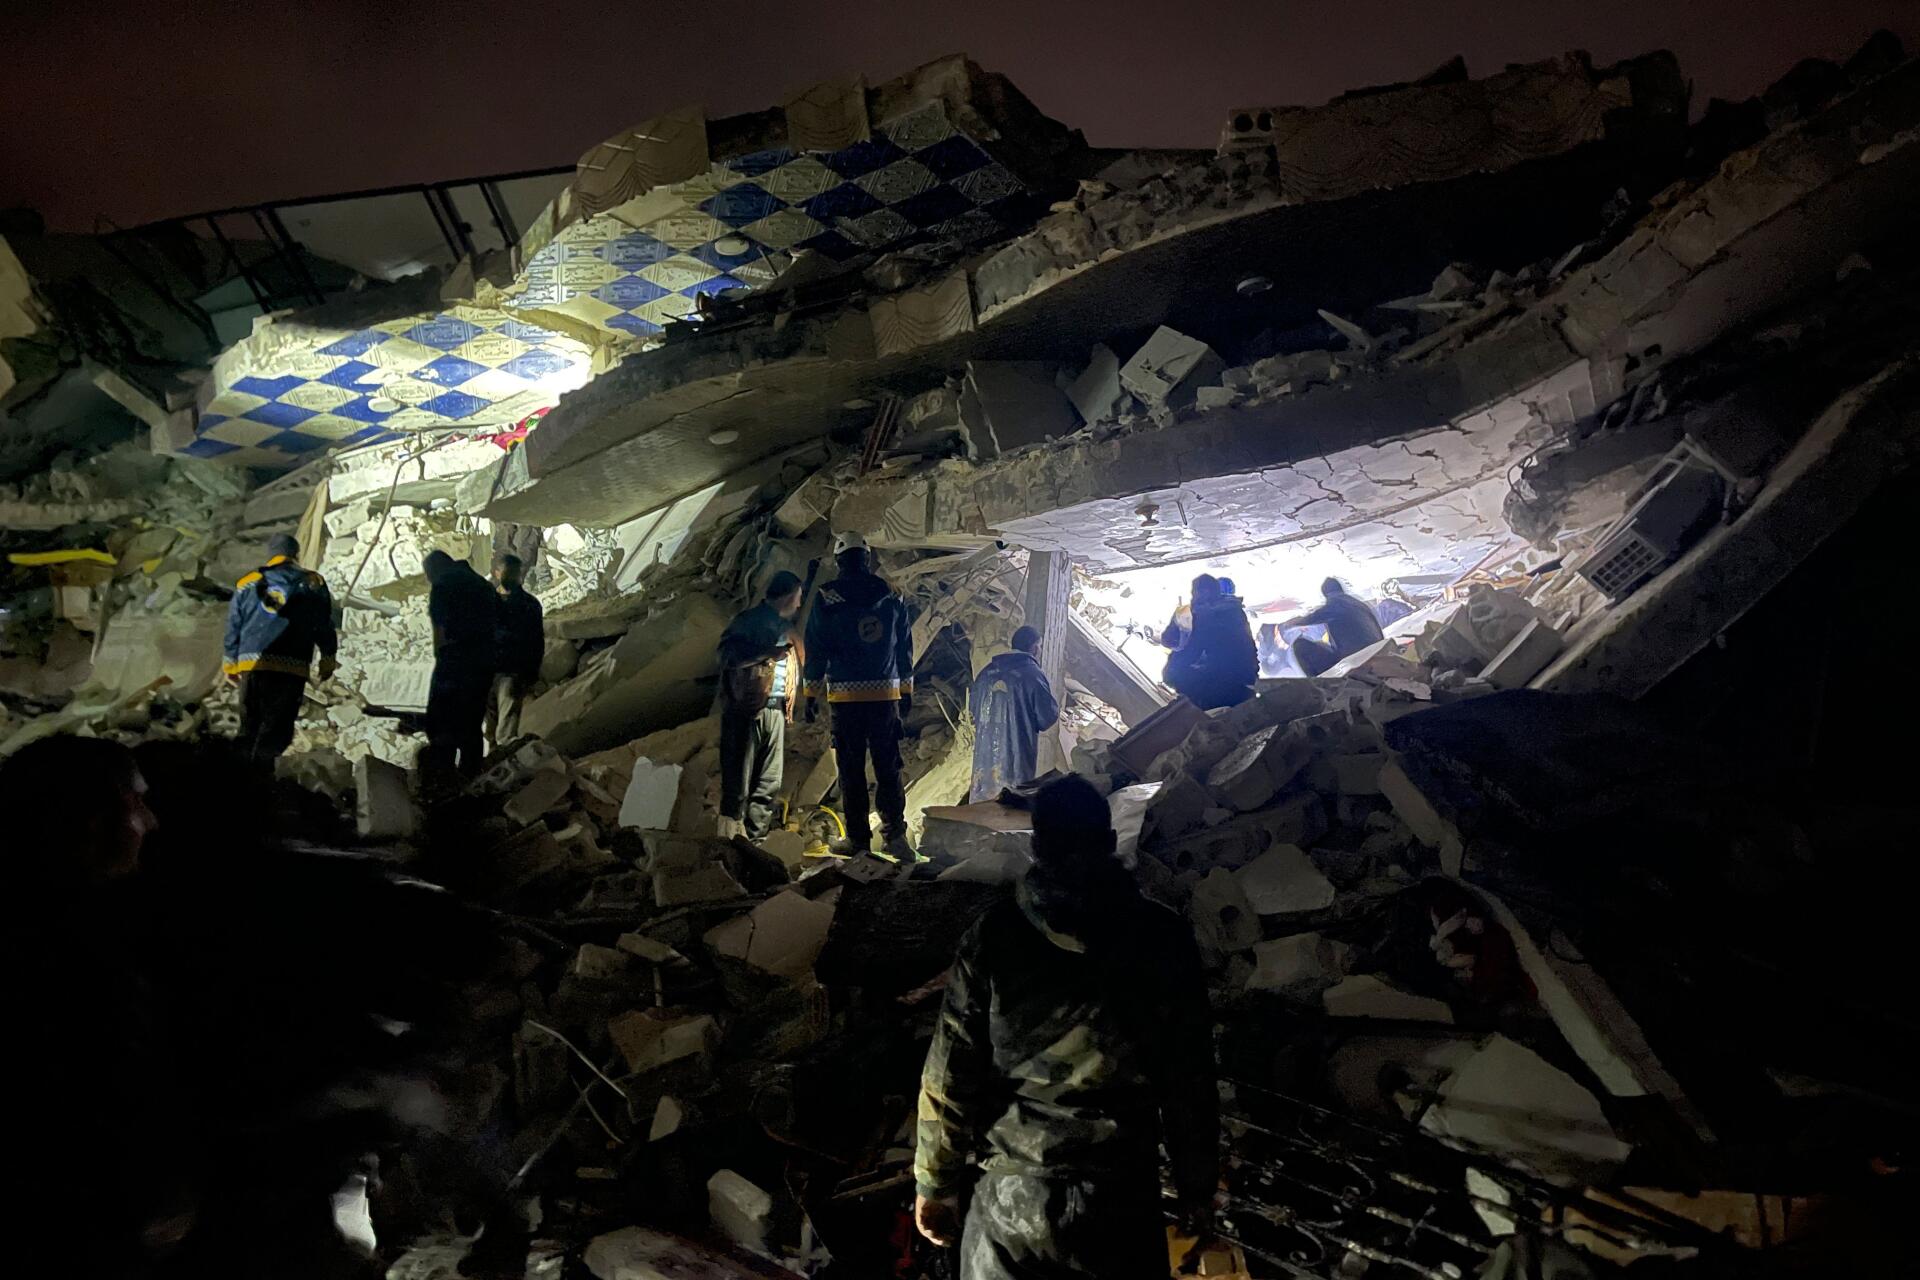 Peu après le tremblement de terre, des secouristes syriens (casques blancs) et des civils recherchent des victimes et des survivants parmi les décombres d’un bâtiment, dans la campagne du nord de la province syrienne d’Idlib, à la frontière avec la Turquie, tenue par les rebelles, tôt le 6 février 2023. Le séisme est survenu en pleine nuit (à 4 h 17 soit 2 h 17 heure de Paris).